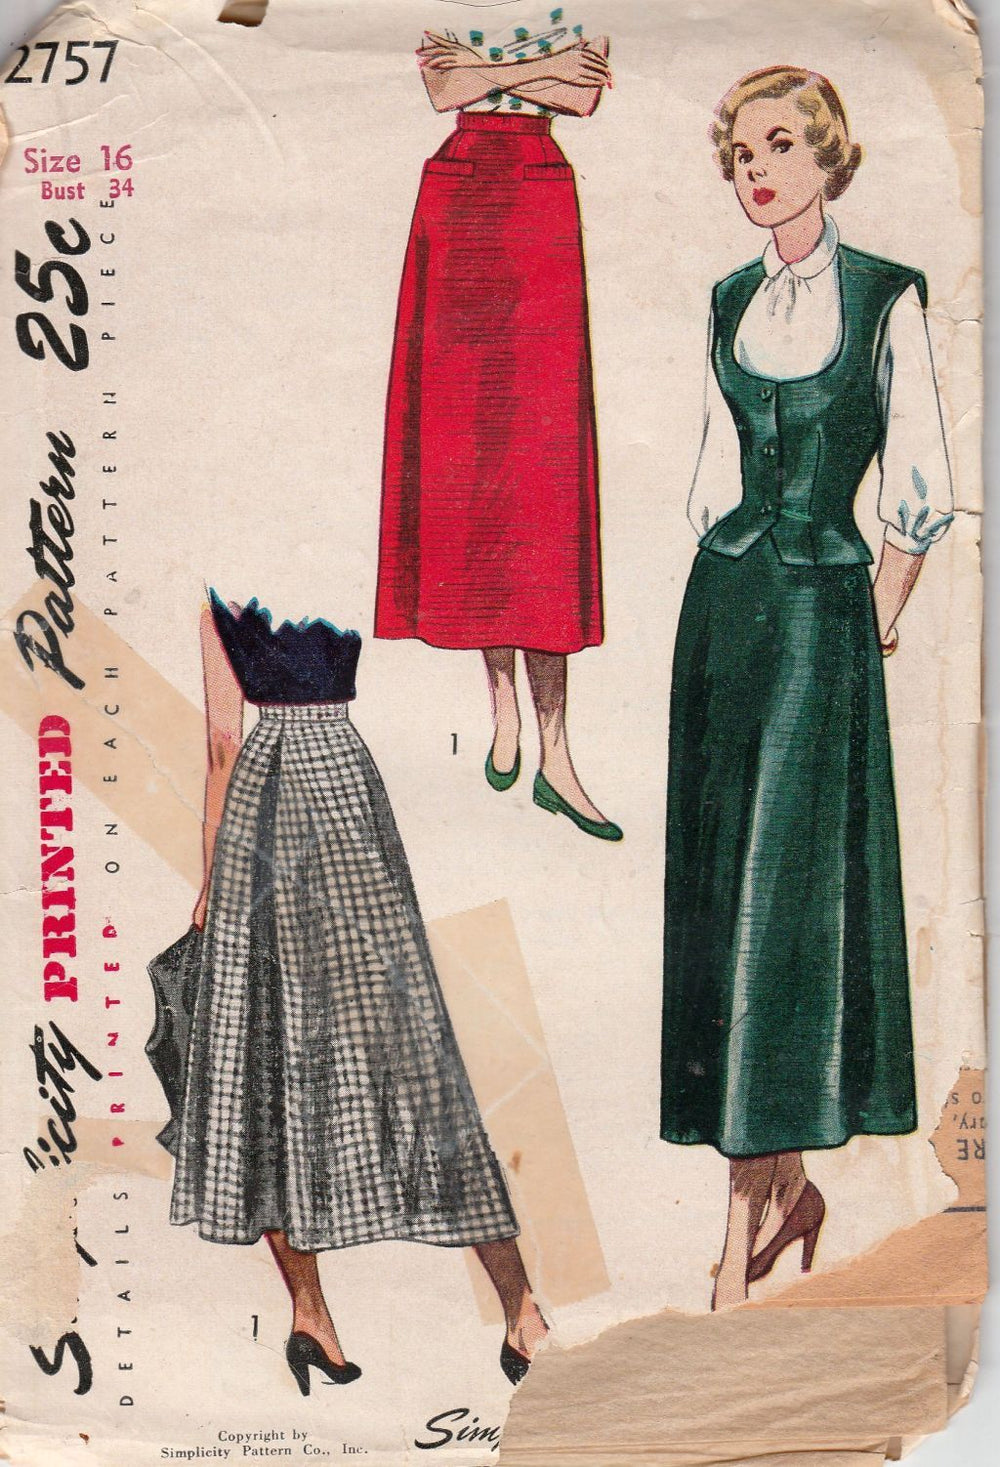 Simplicity 2757 Ladies Skirt Weskit Vintage 1940's Sewing Pattern - VintageStitching - Vintage Sewing Patterns